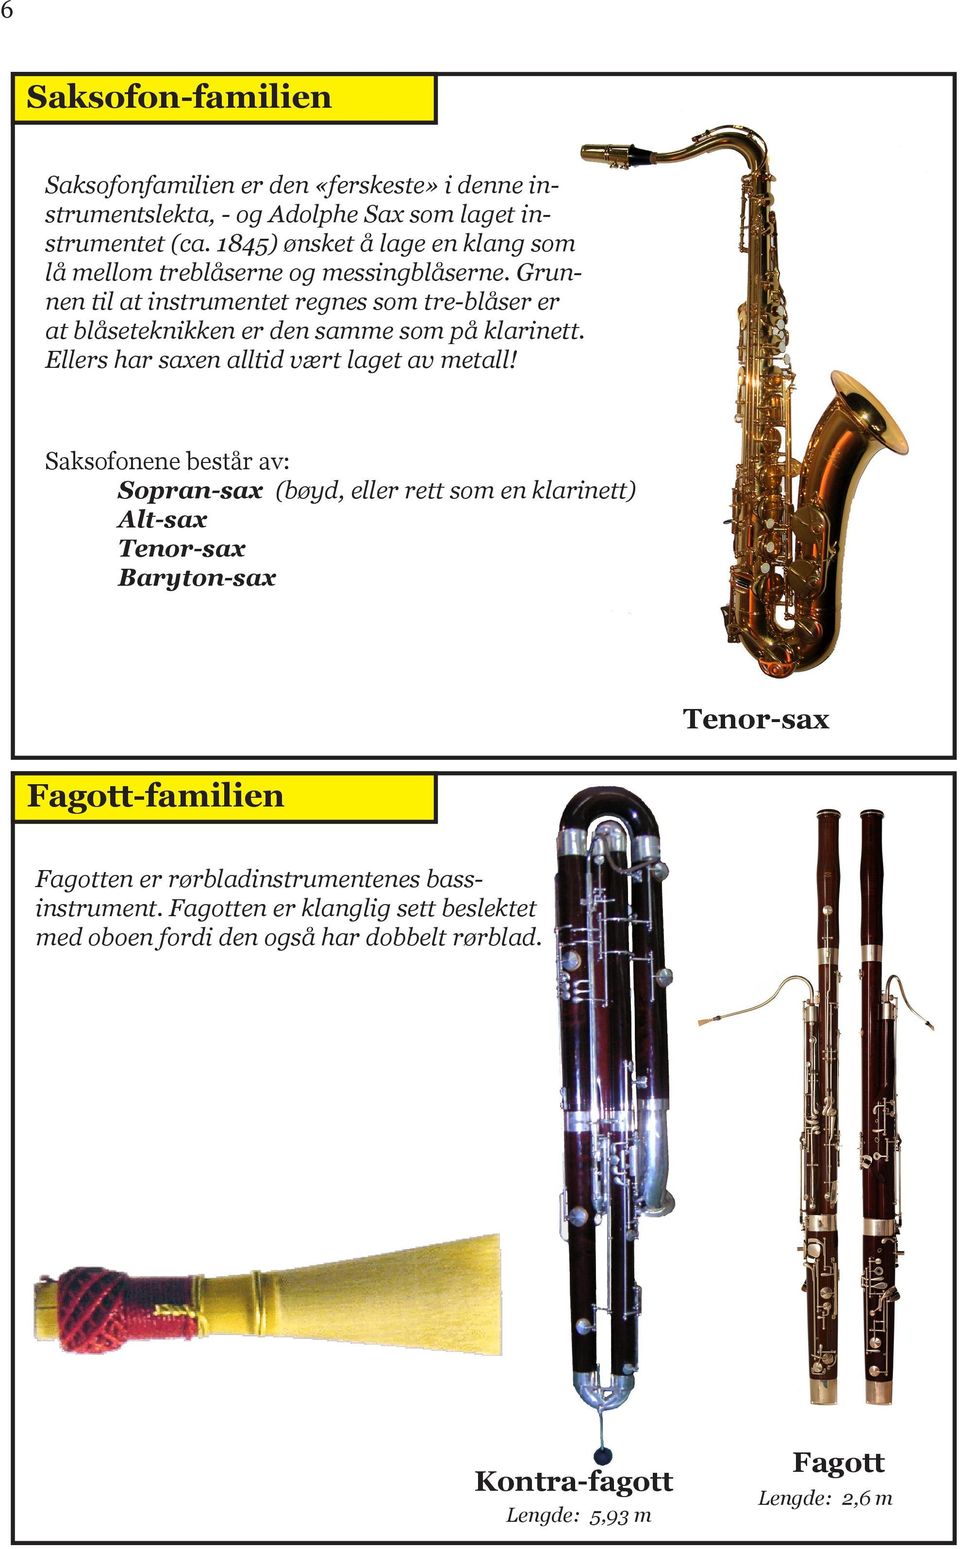 Grunnen til at instrumentet regnes som tre-blåser er at blåseteknikken er den samme som på klarinett. Ellers har saxen alltid vært laget av metall!